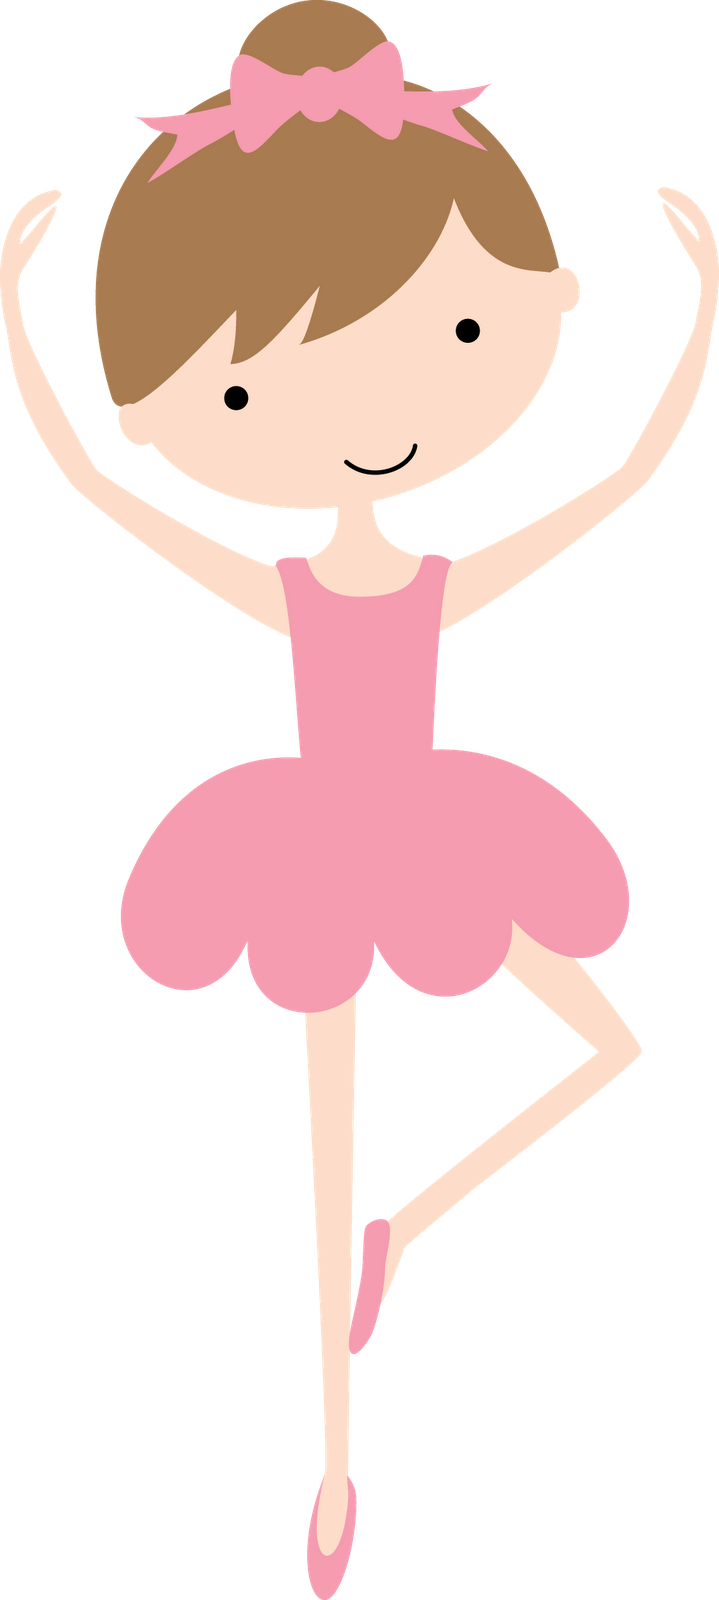 Cartoon Ballerina Posing.png PNG image